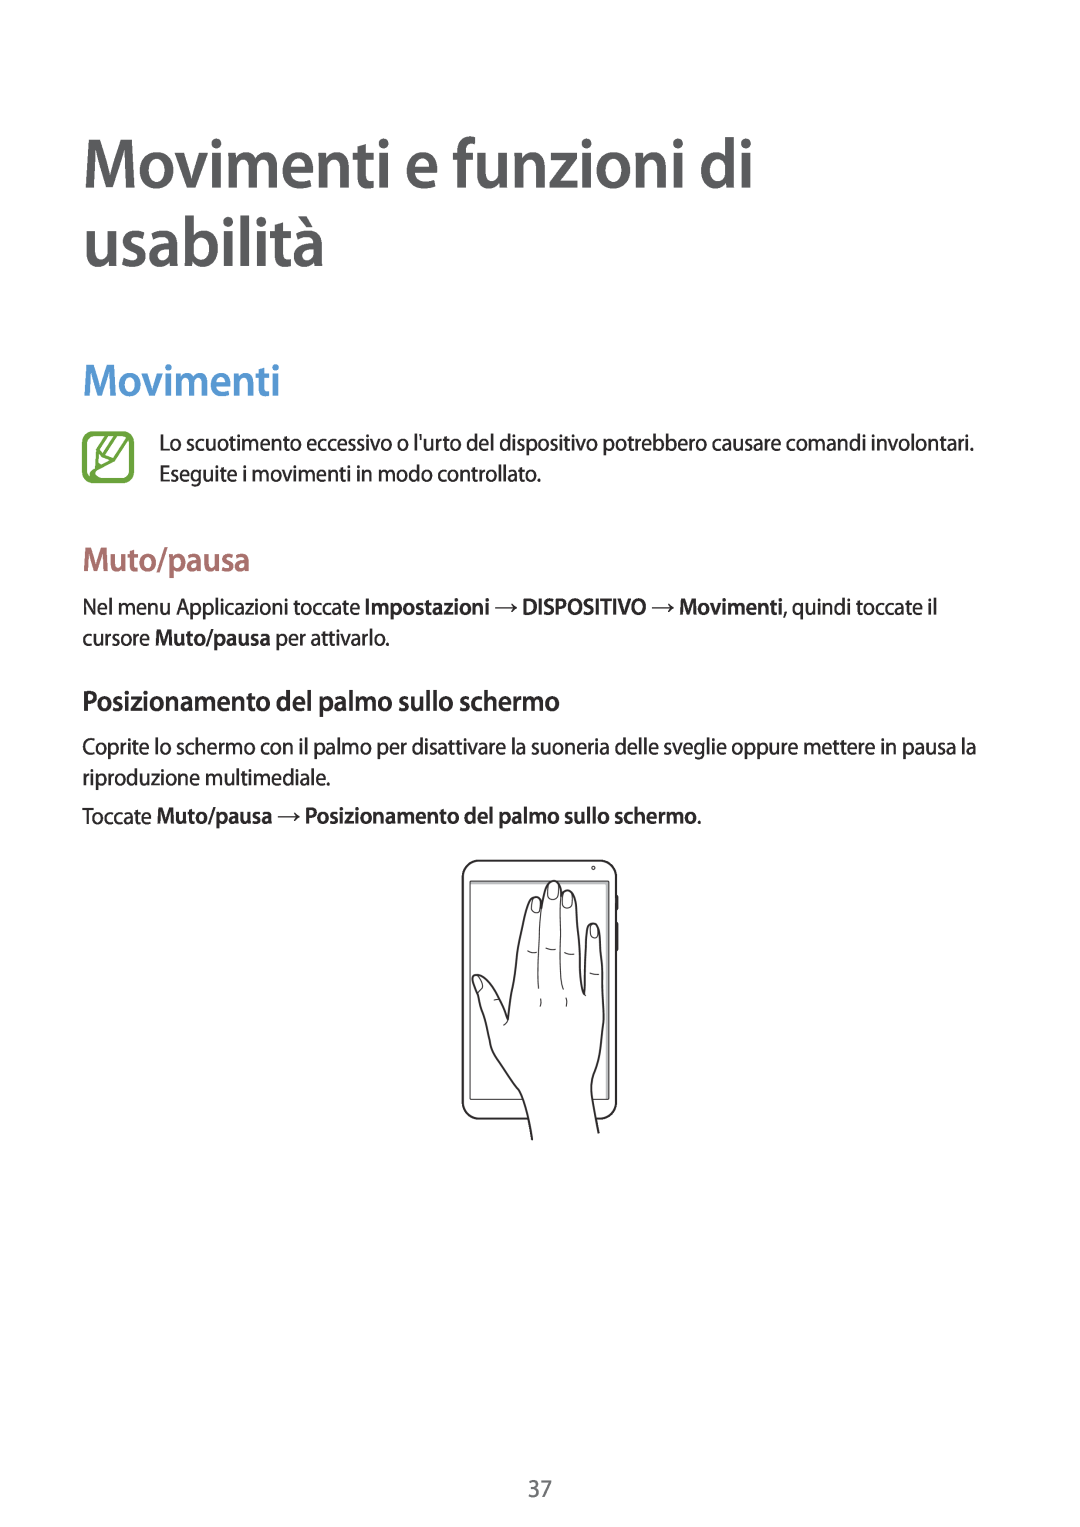 Samsung SM-T700NTSAXEO manual Movimenti e funzioni di usabilità, Muto/pausa, Posizionamento del palmo sullo schermo 